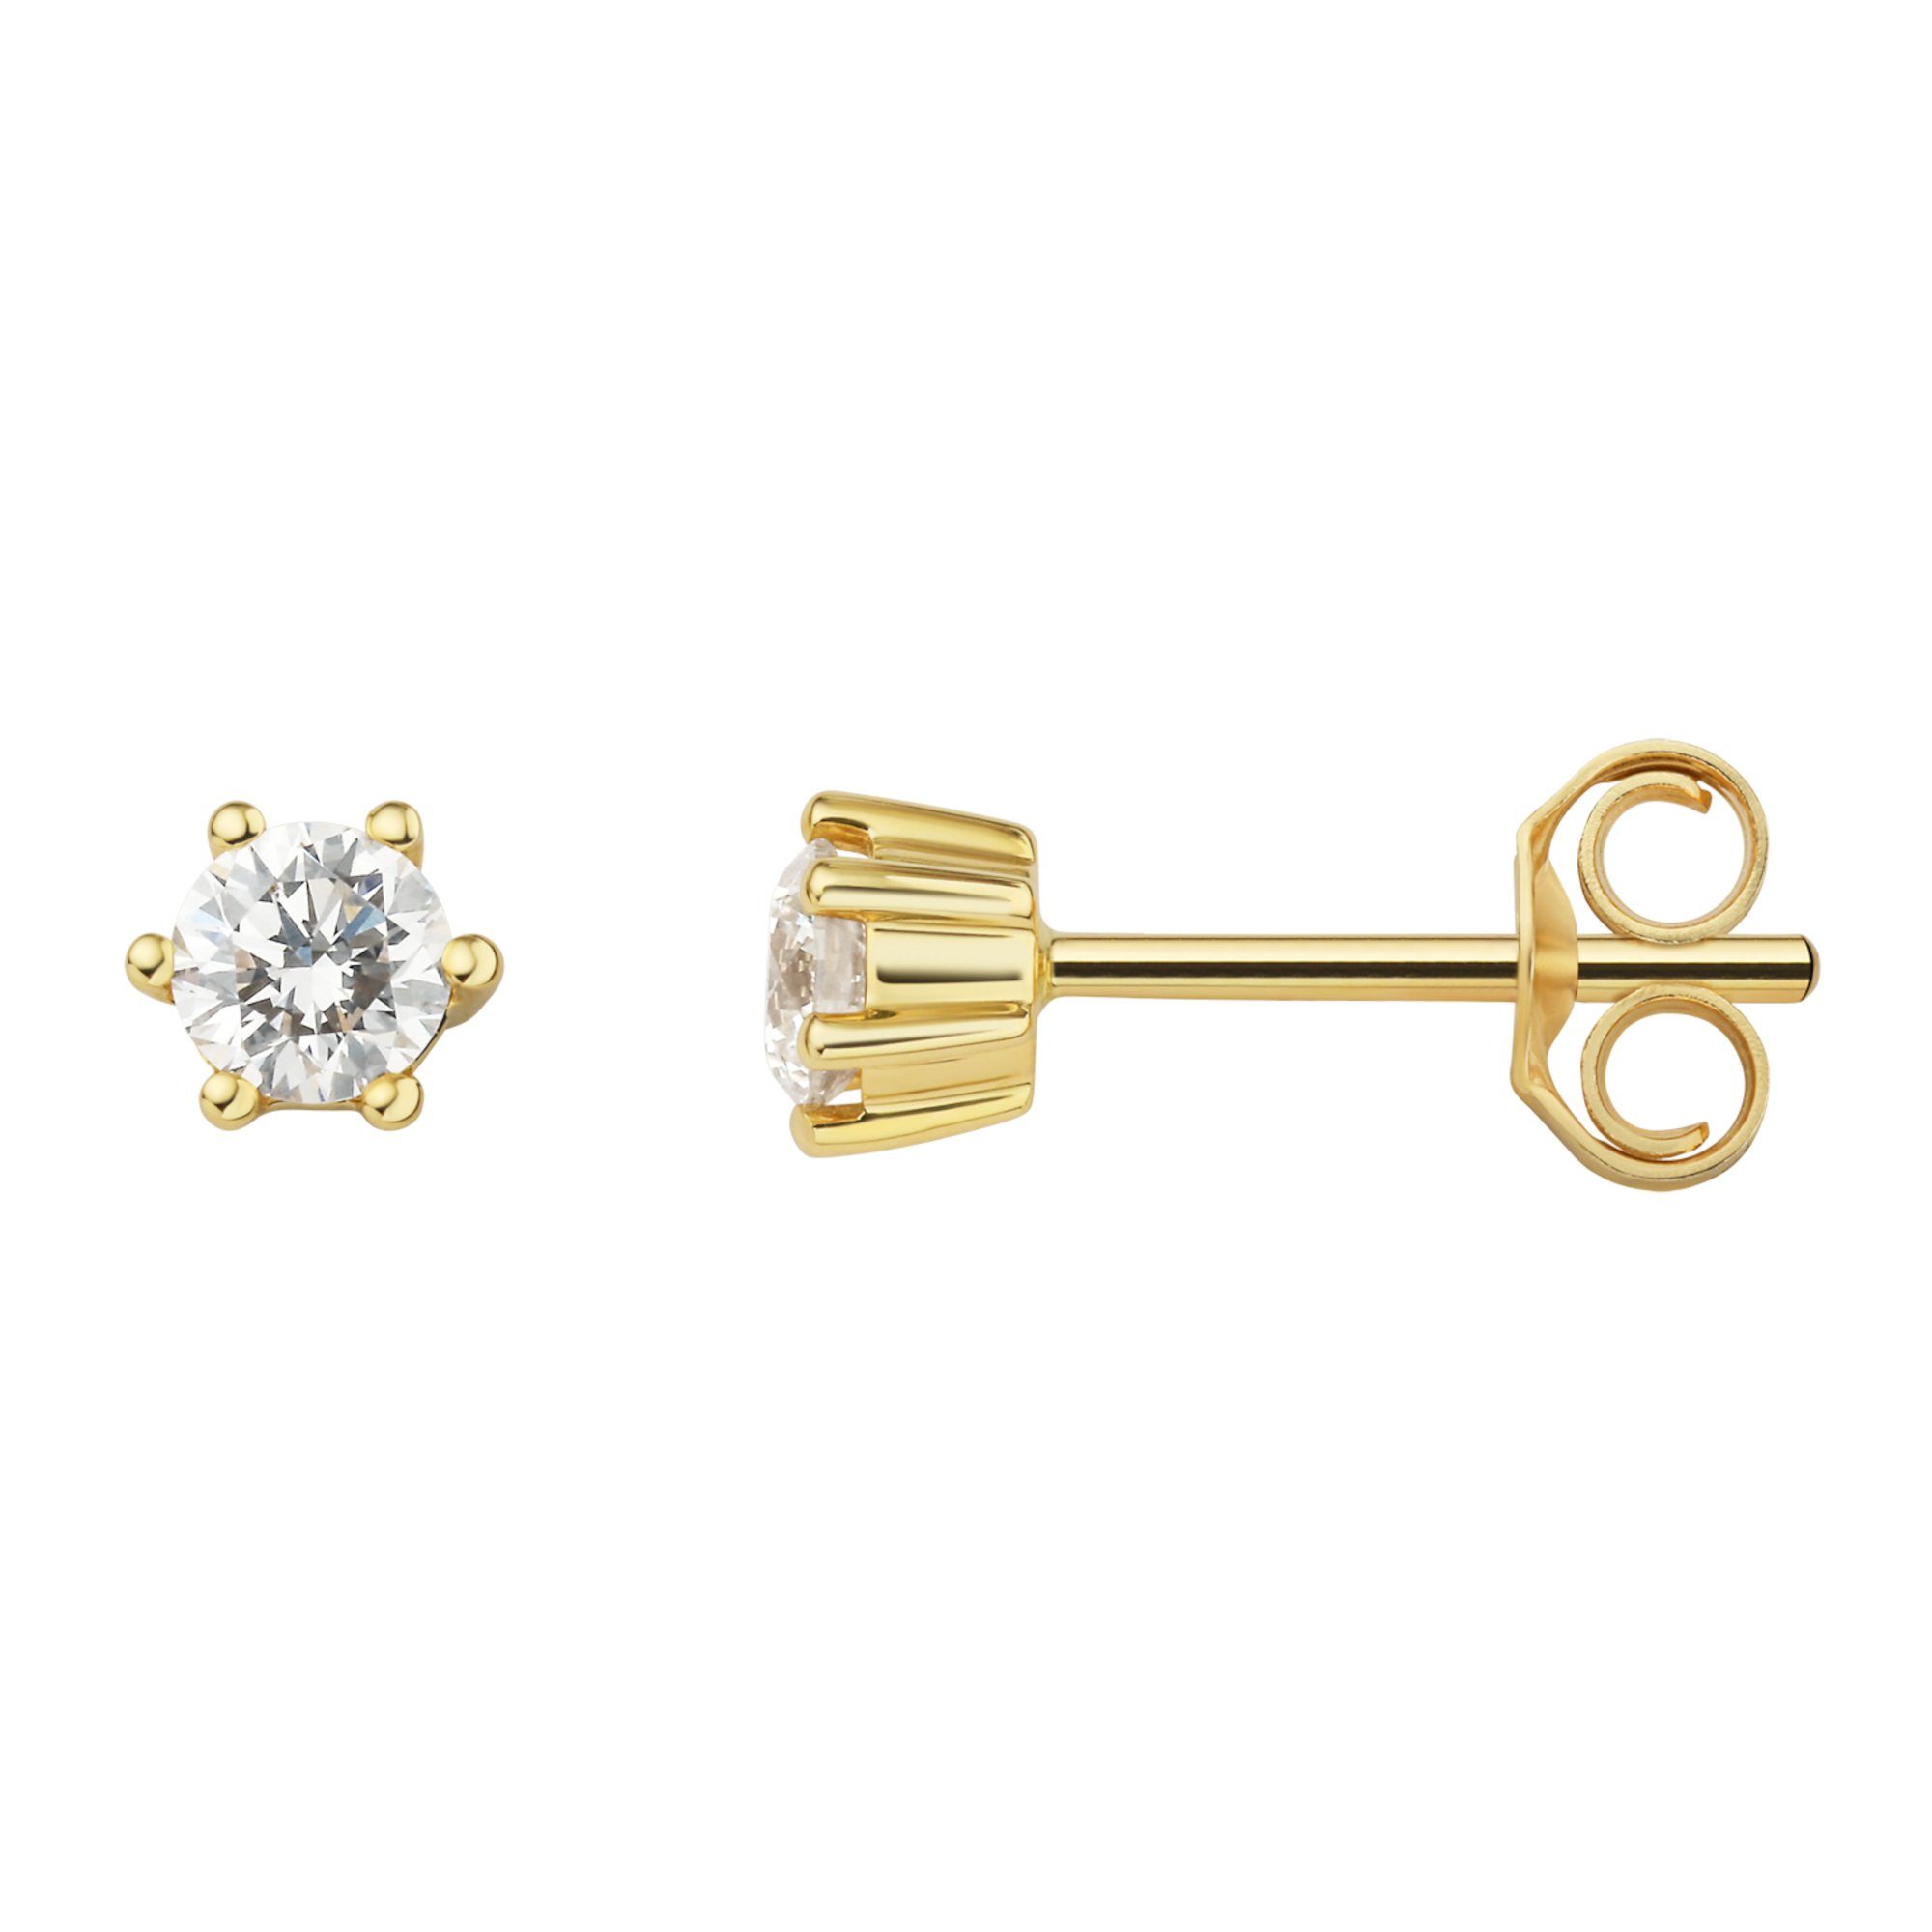 Schmuck aus Paar Ohrstecker ELEMENT Damen Gelbgold, 0.3 ct Brillant Diamant Ohrstecker Gold Ohrringe 750 ONE